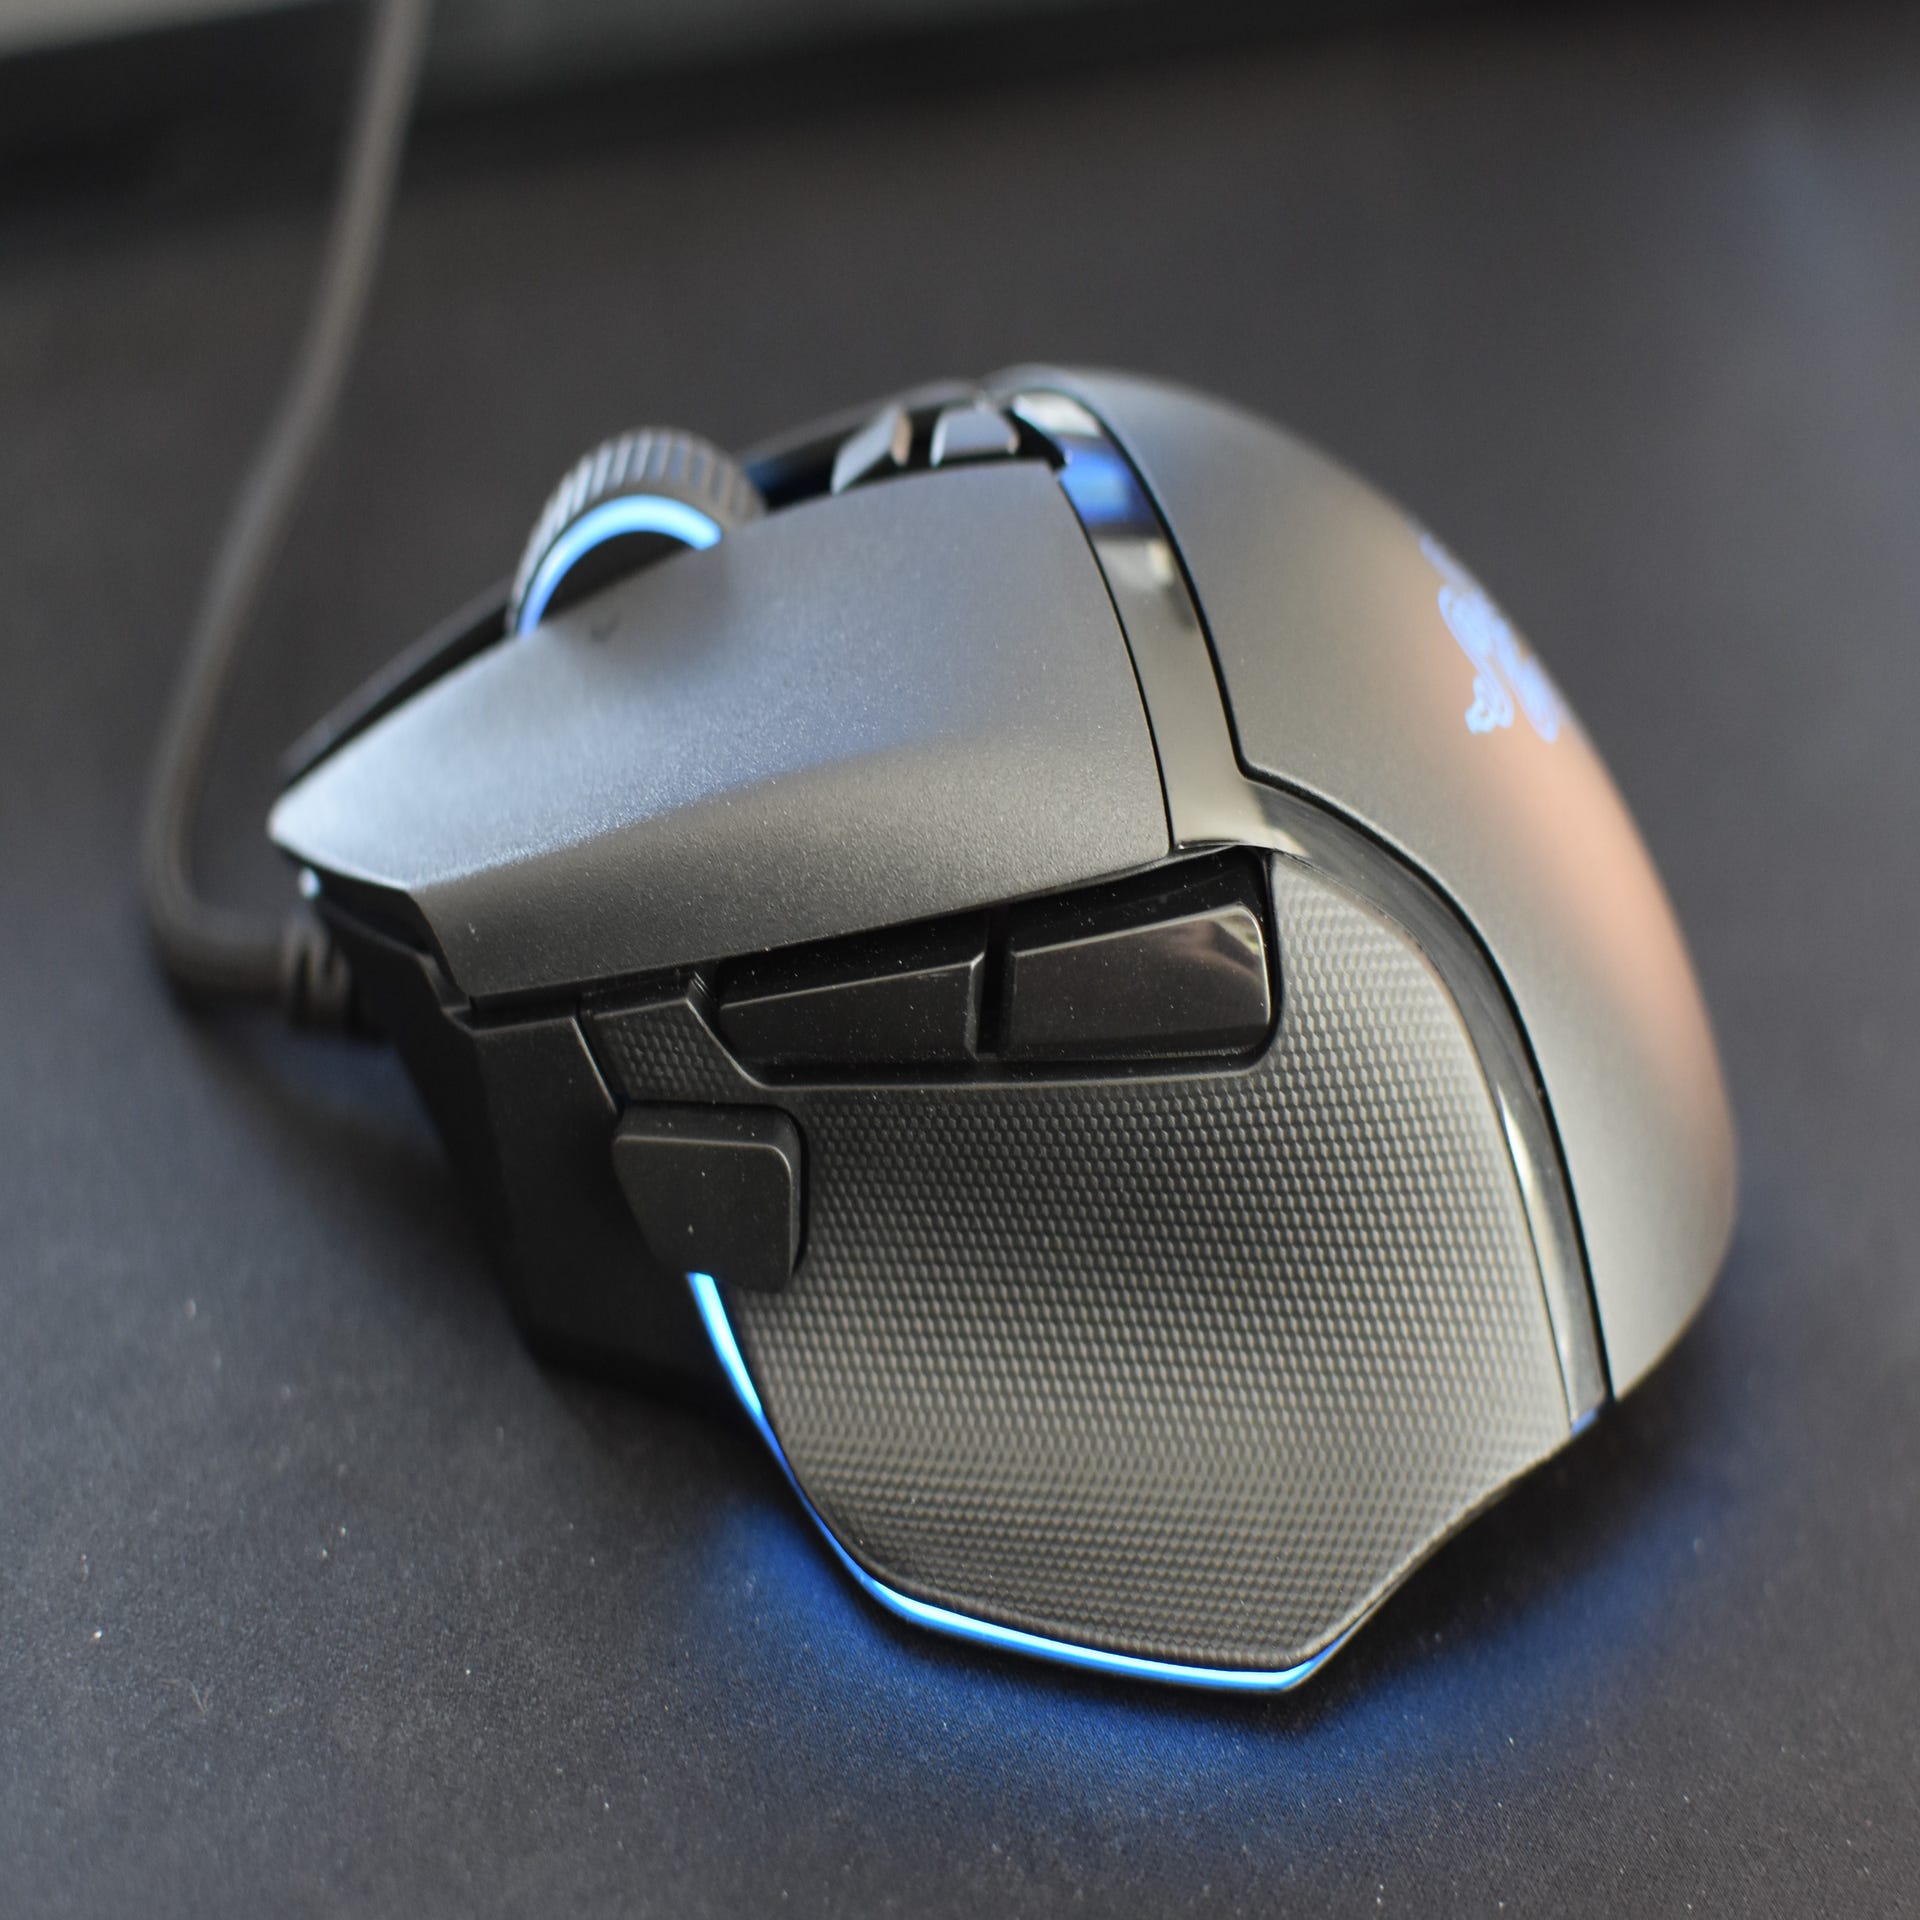 Razer Basilisk V3 review: A faster, smarter gaming mouse